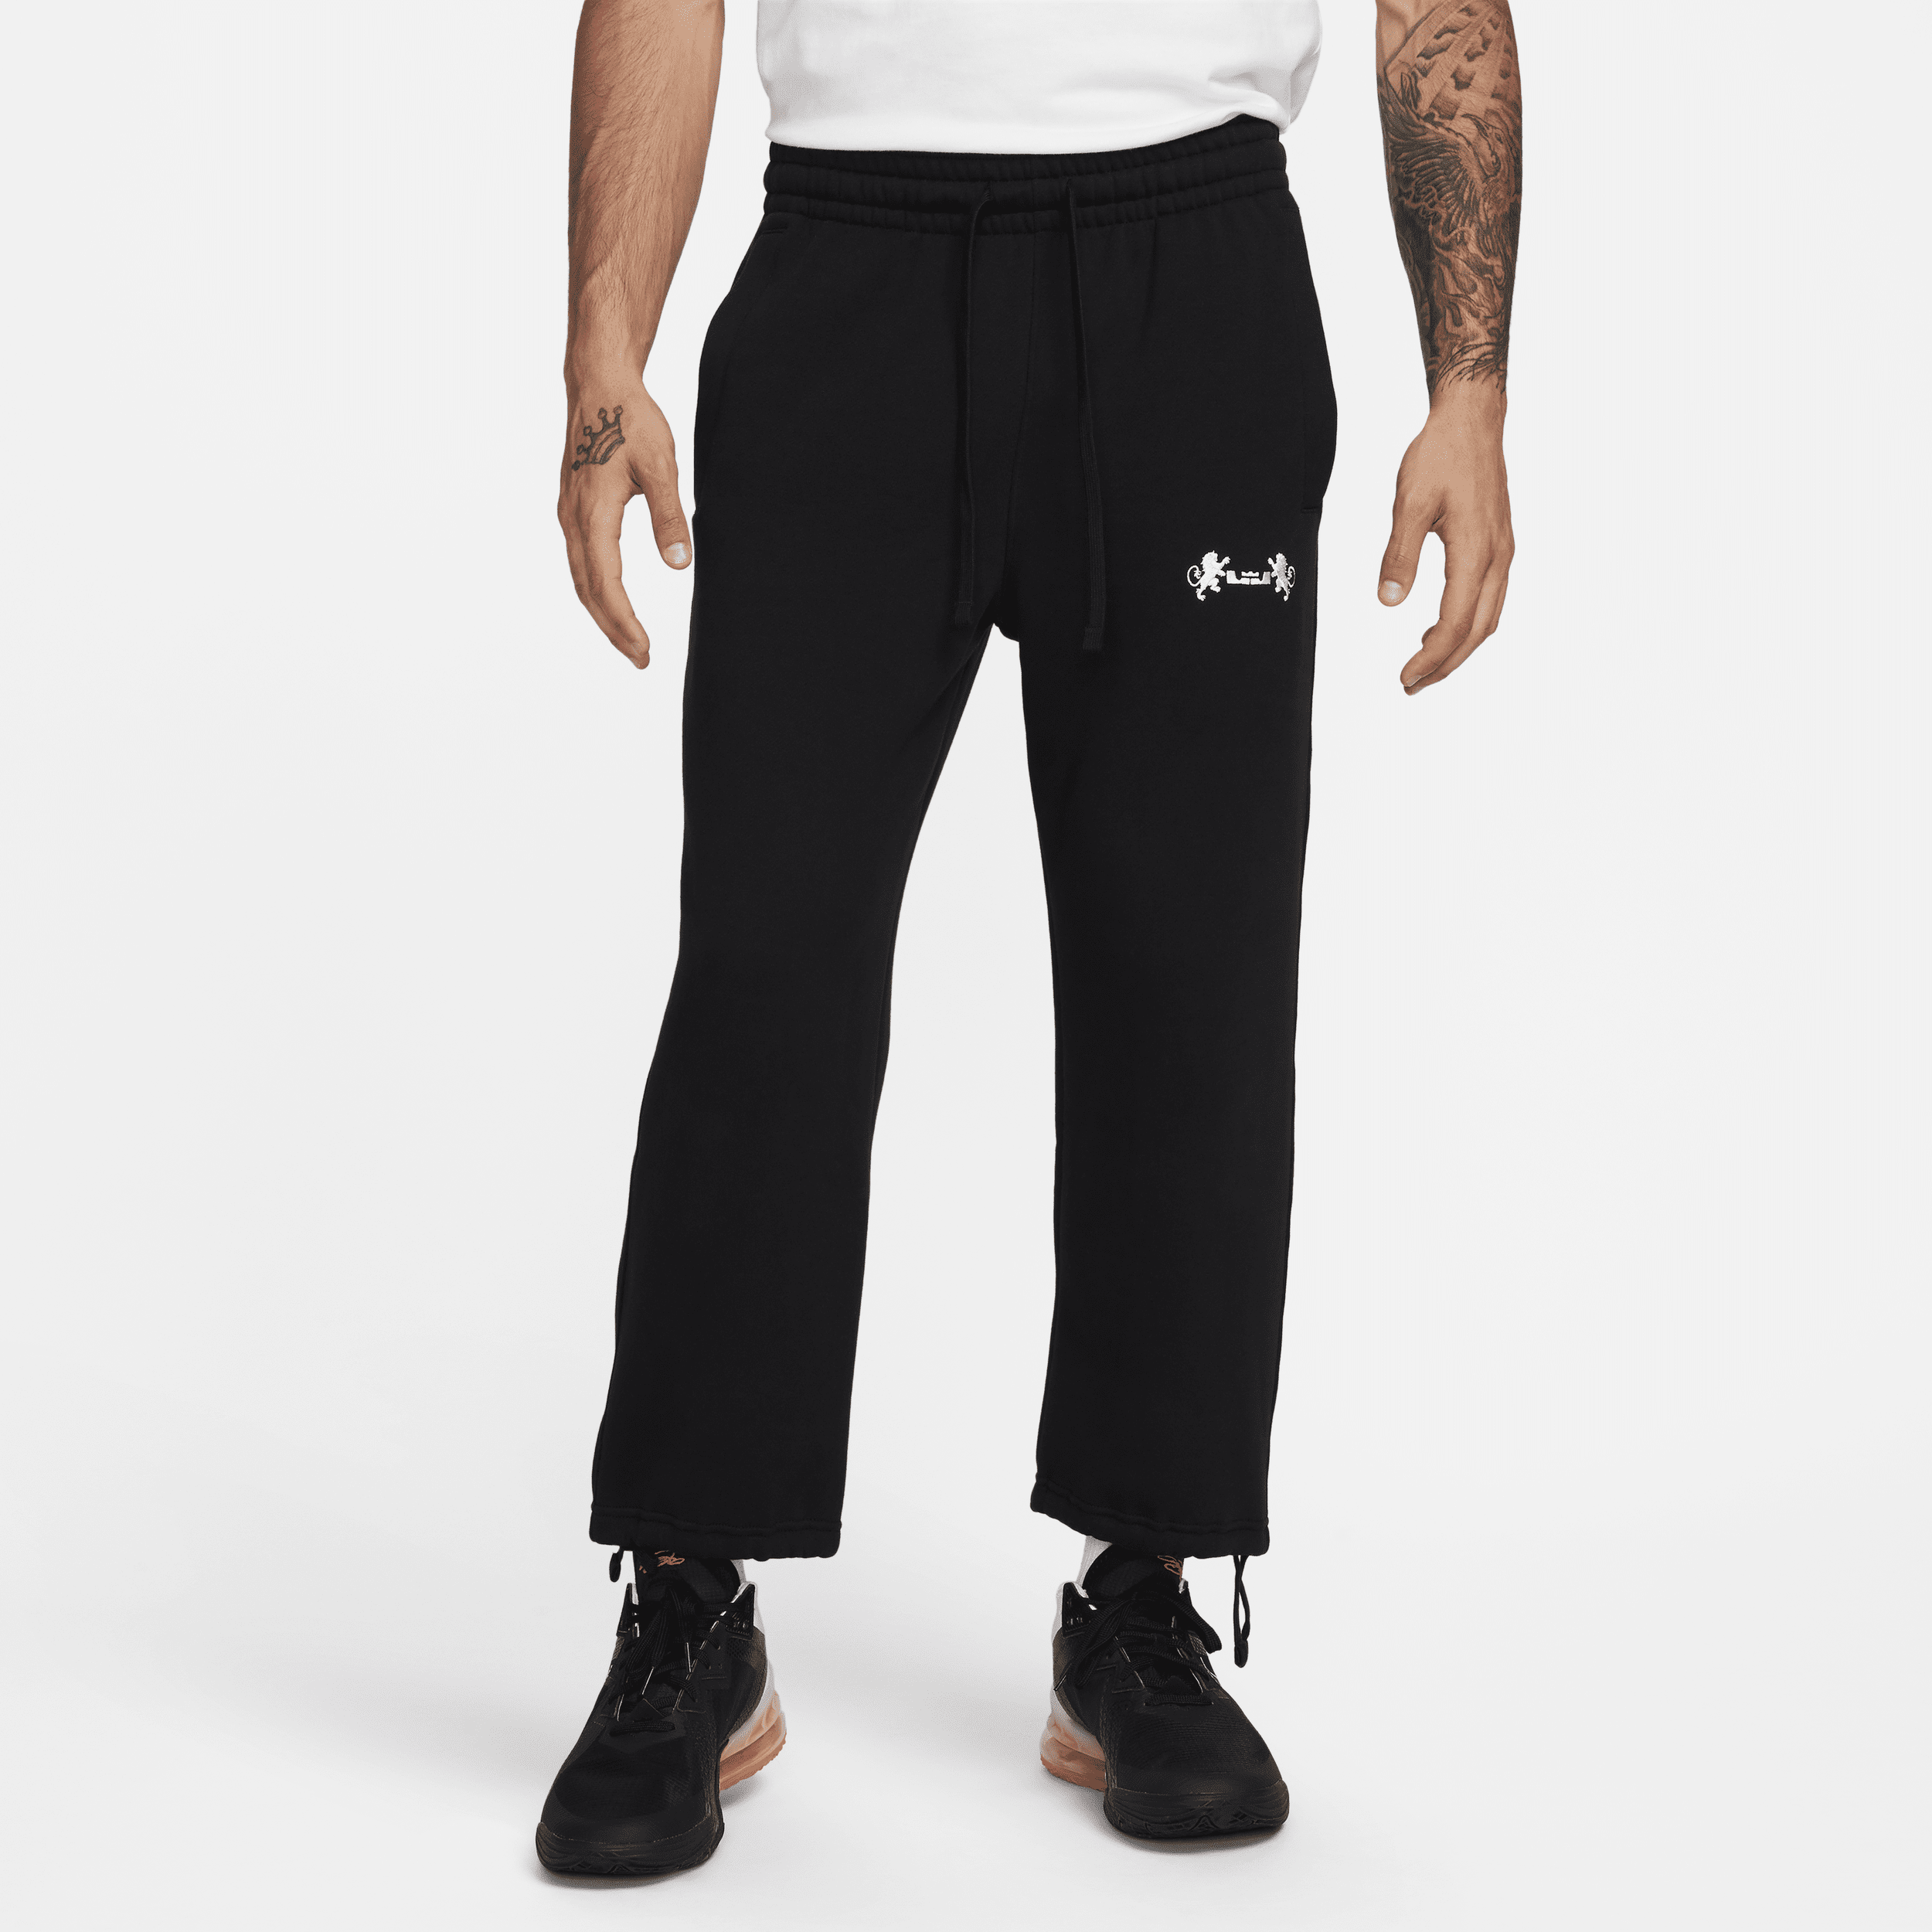 Nike Pantaloni in fleece con bordo aperto LeBron – Uomo - Nero